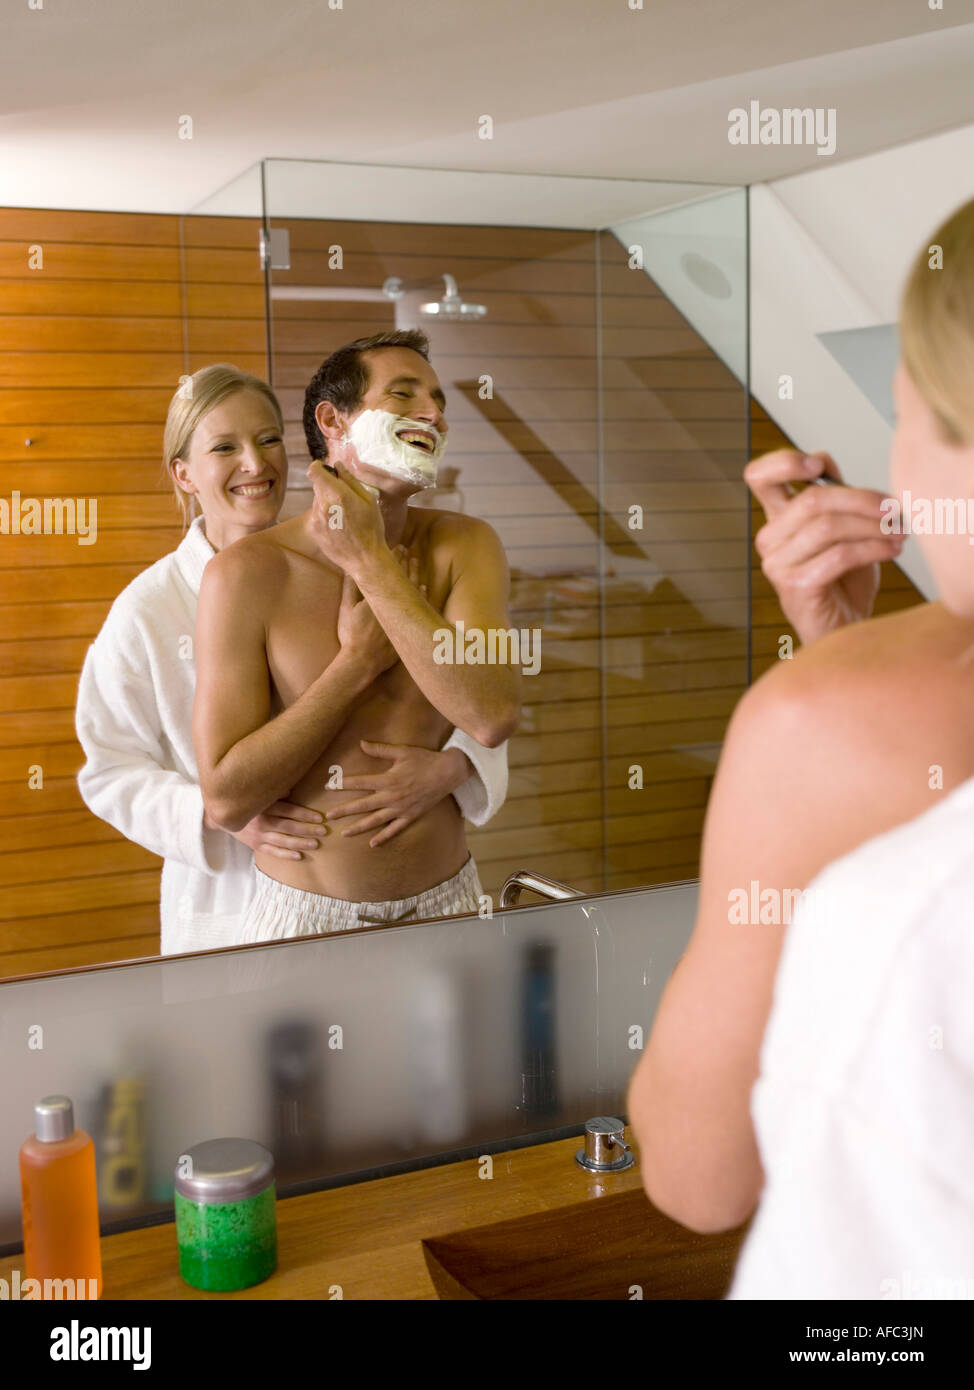 Paar in der Badewanne, Mann rasieren Stockfotografie - Alamy